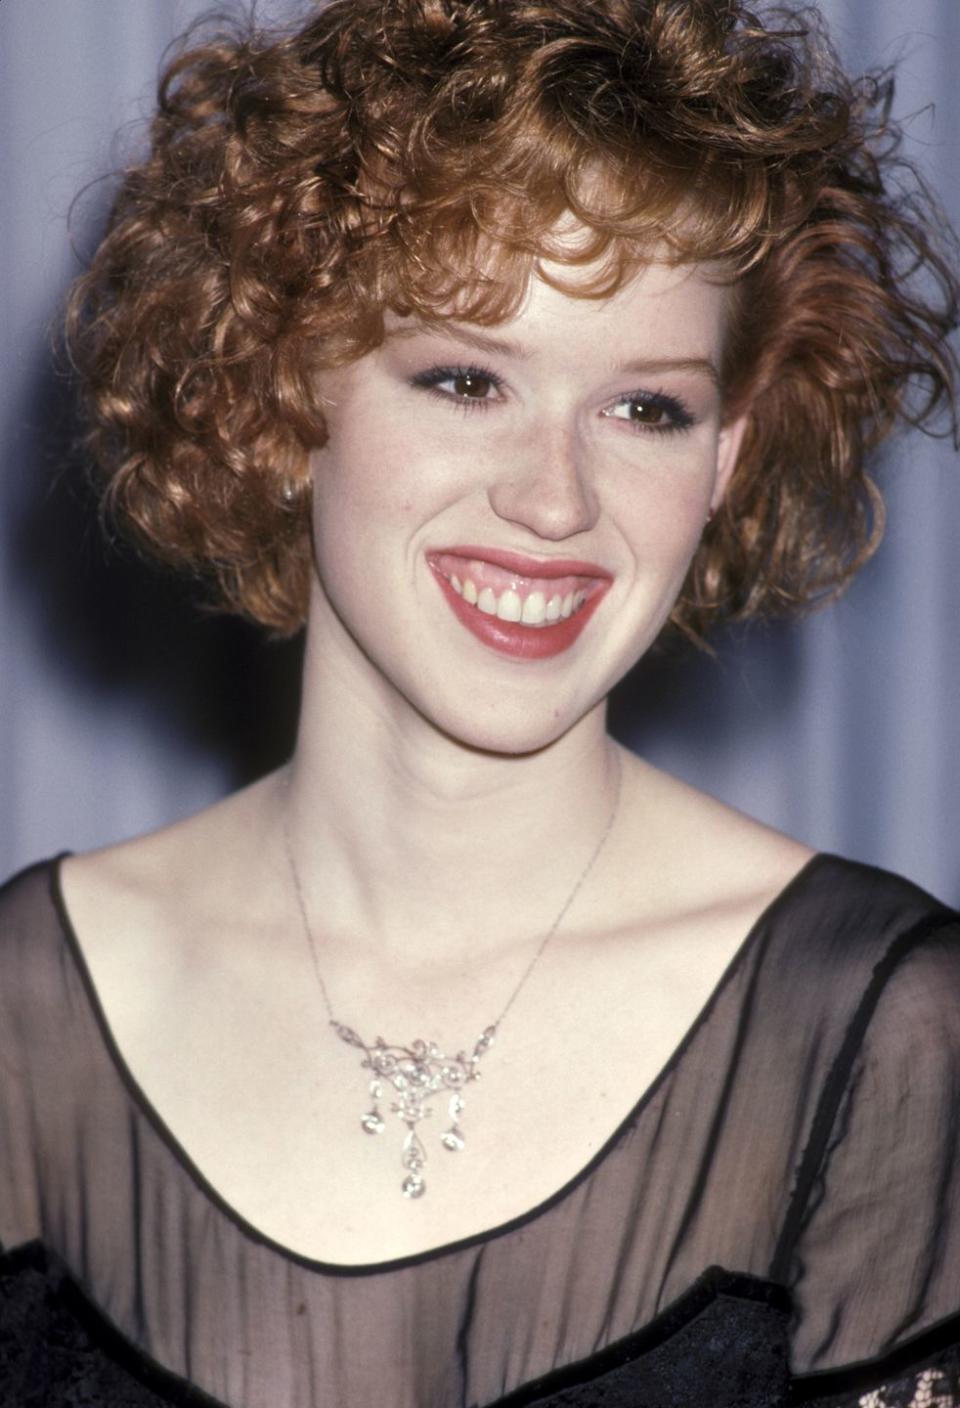 1986: Molly Ringwald